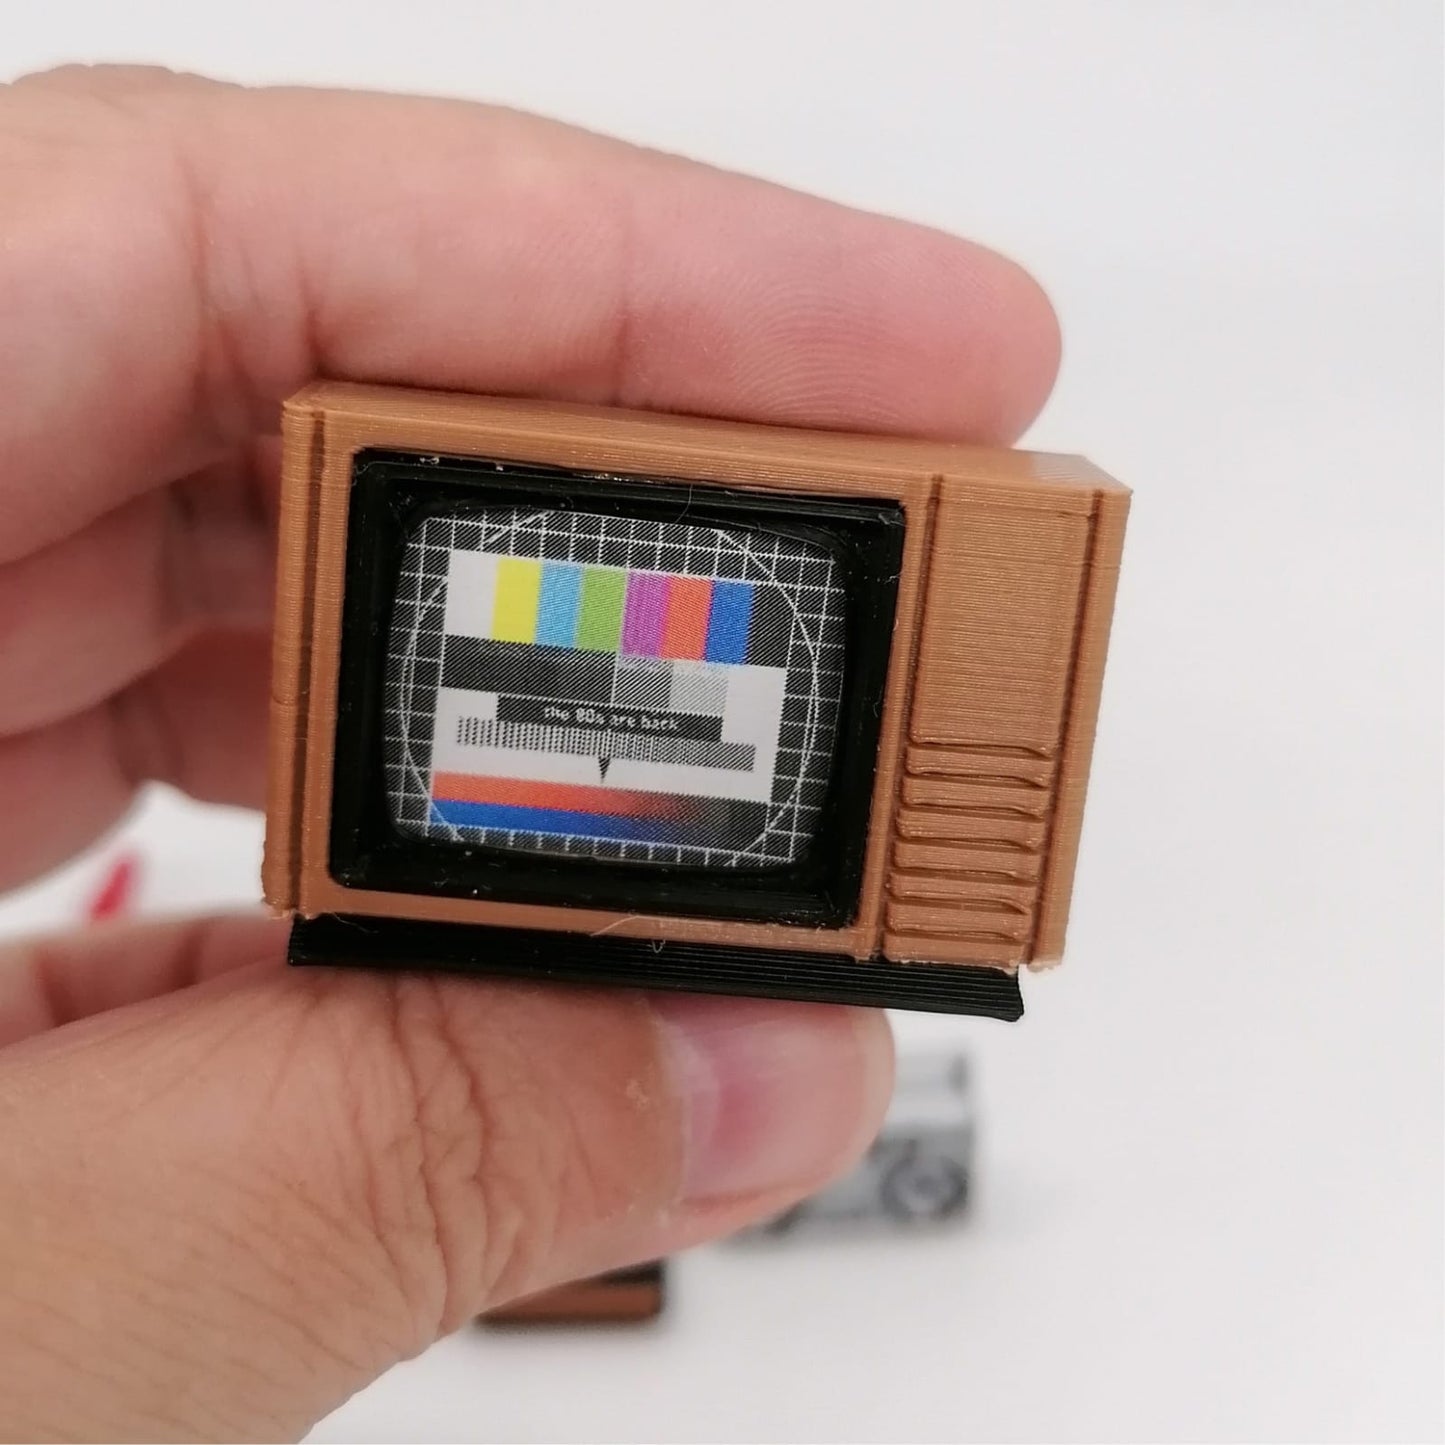 Miniature 80s 1:12 scale multimedia set